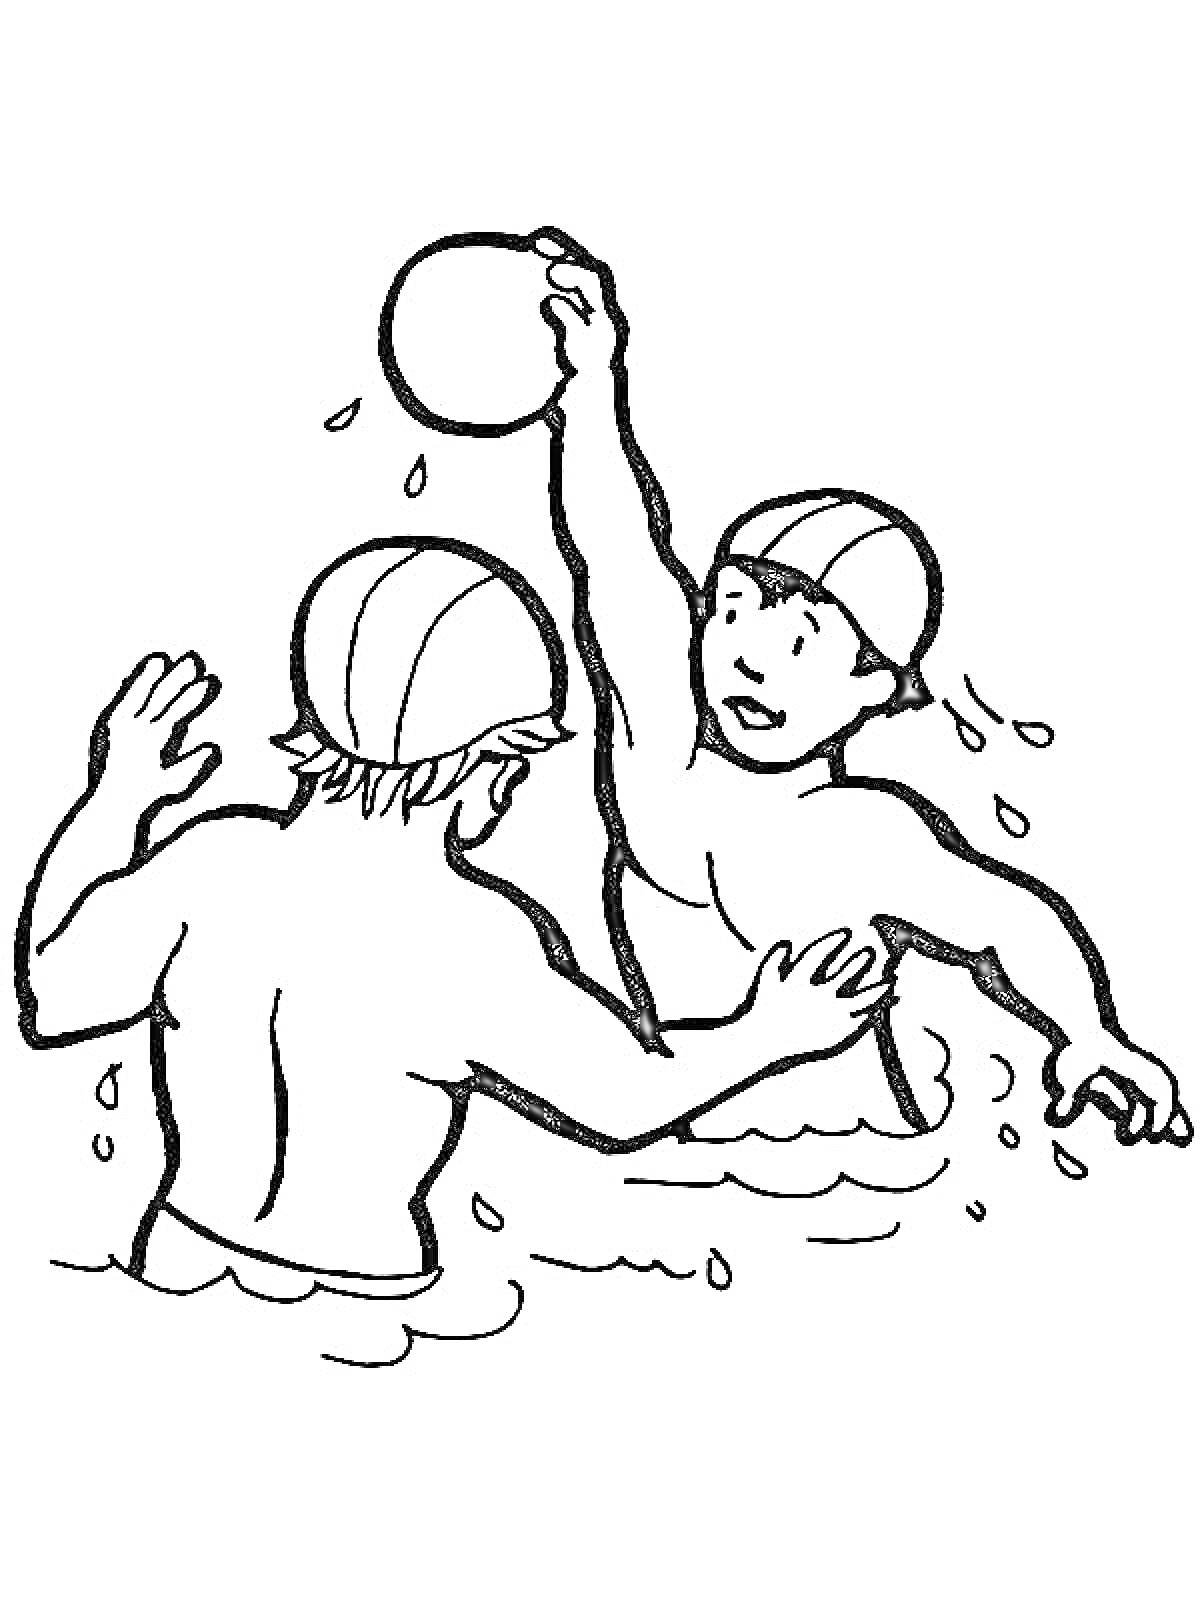 Раскраска Два человека играют в водное поло, один кидает мяч, оба в воде и в шапочках